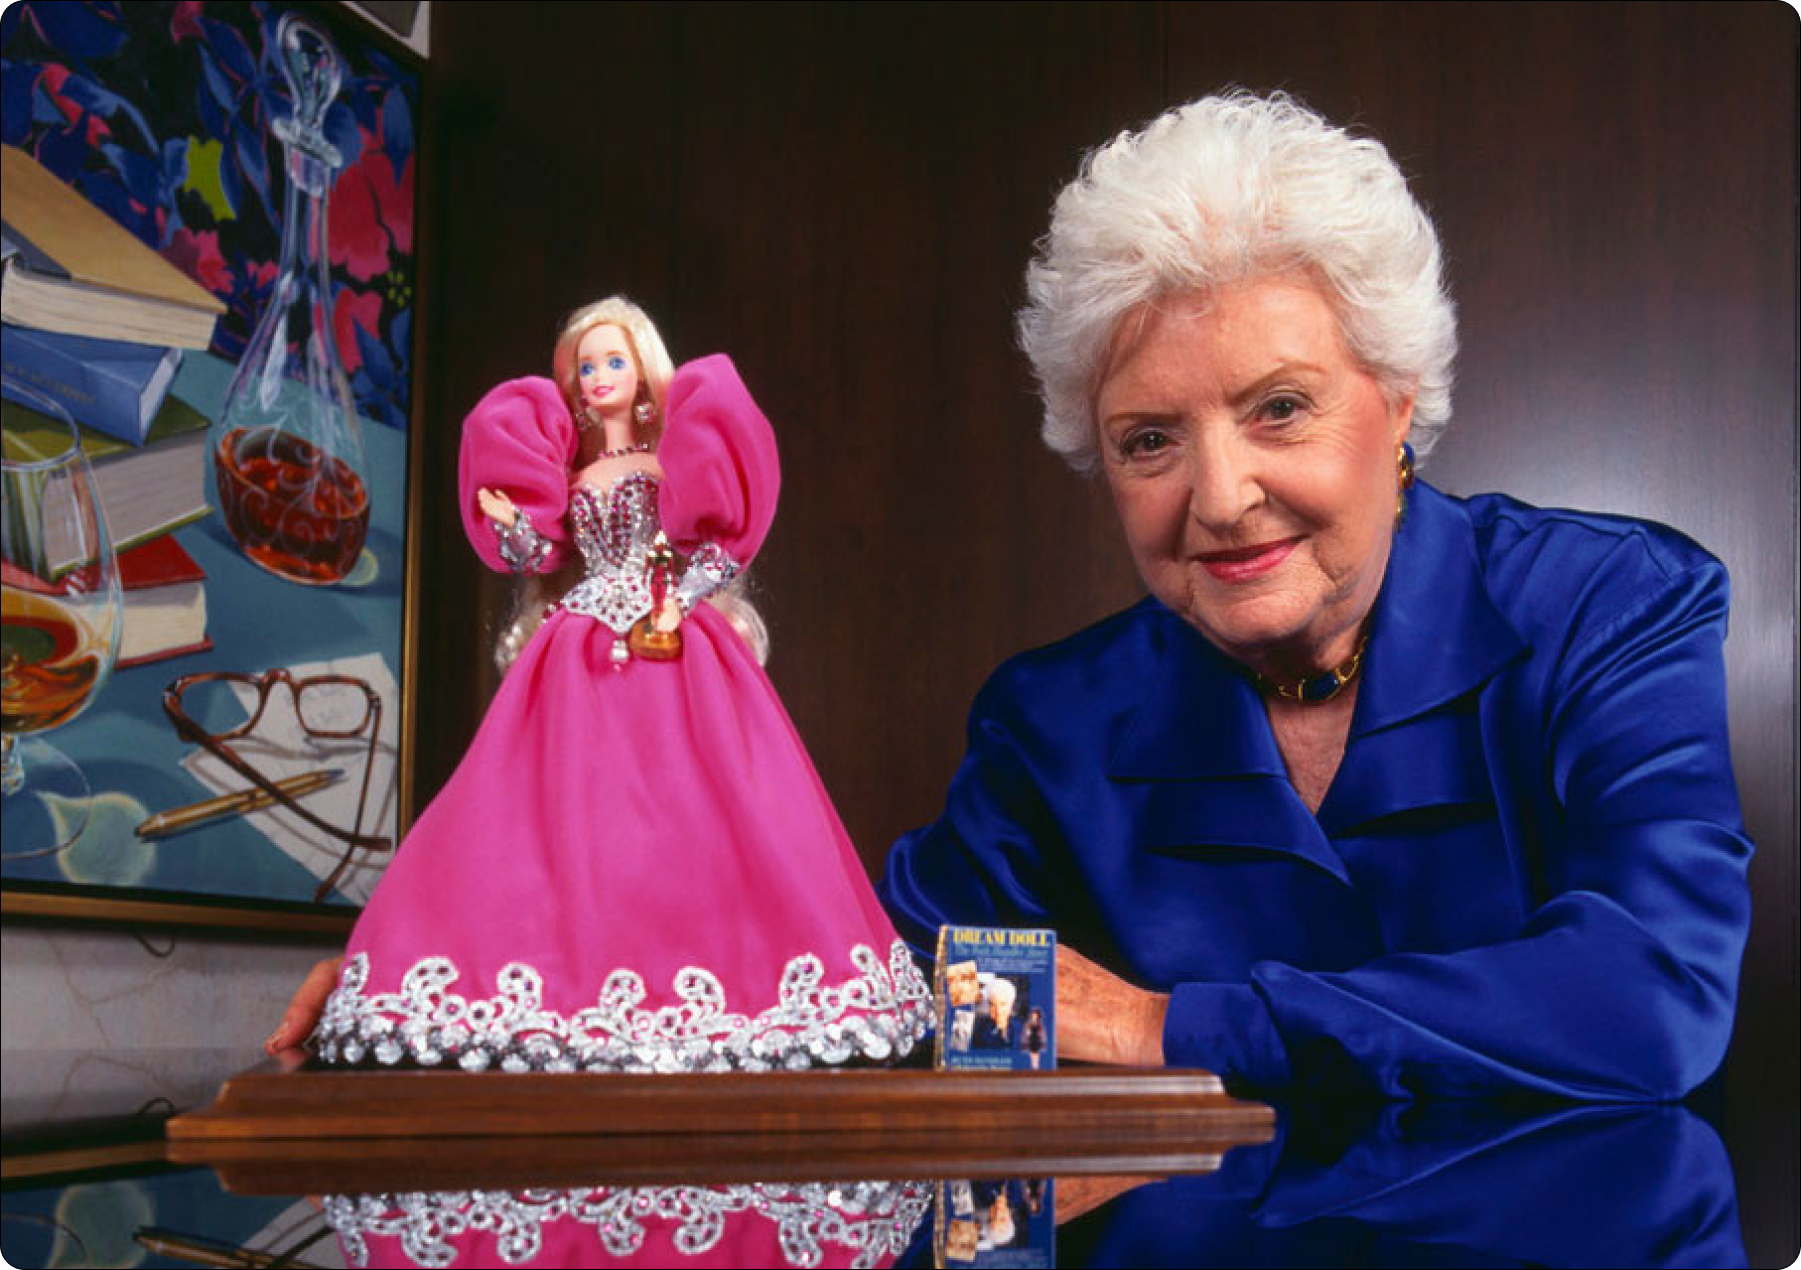 Kim jest kobieta stojąca za najbardziej kontrowersyjną lalką dla dorosłych, Barbie?